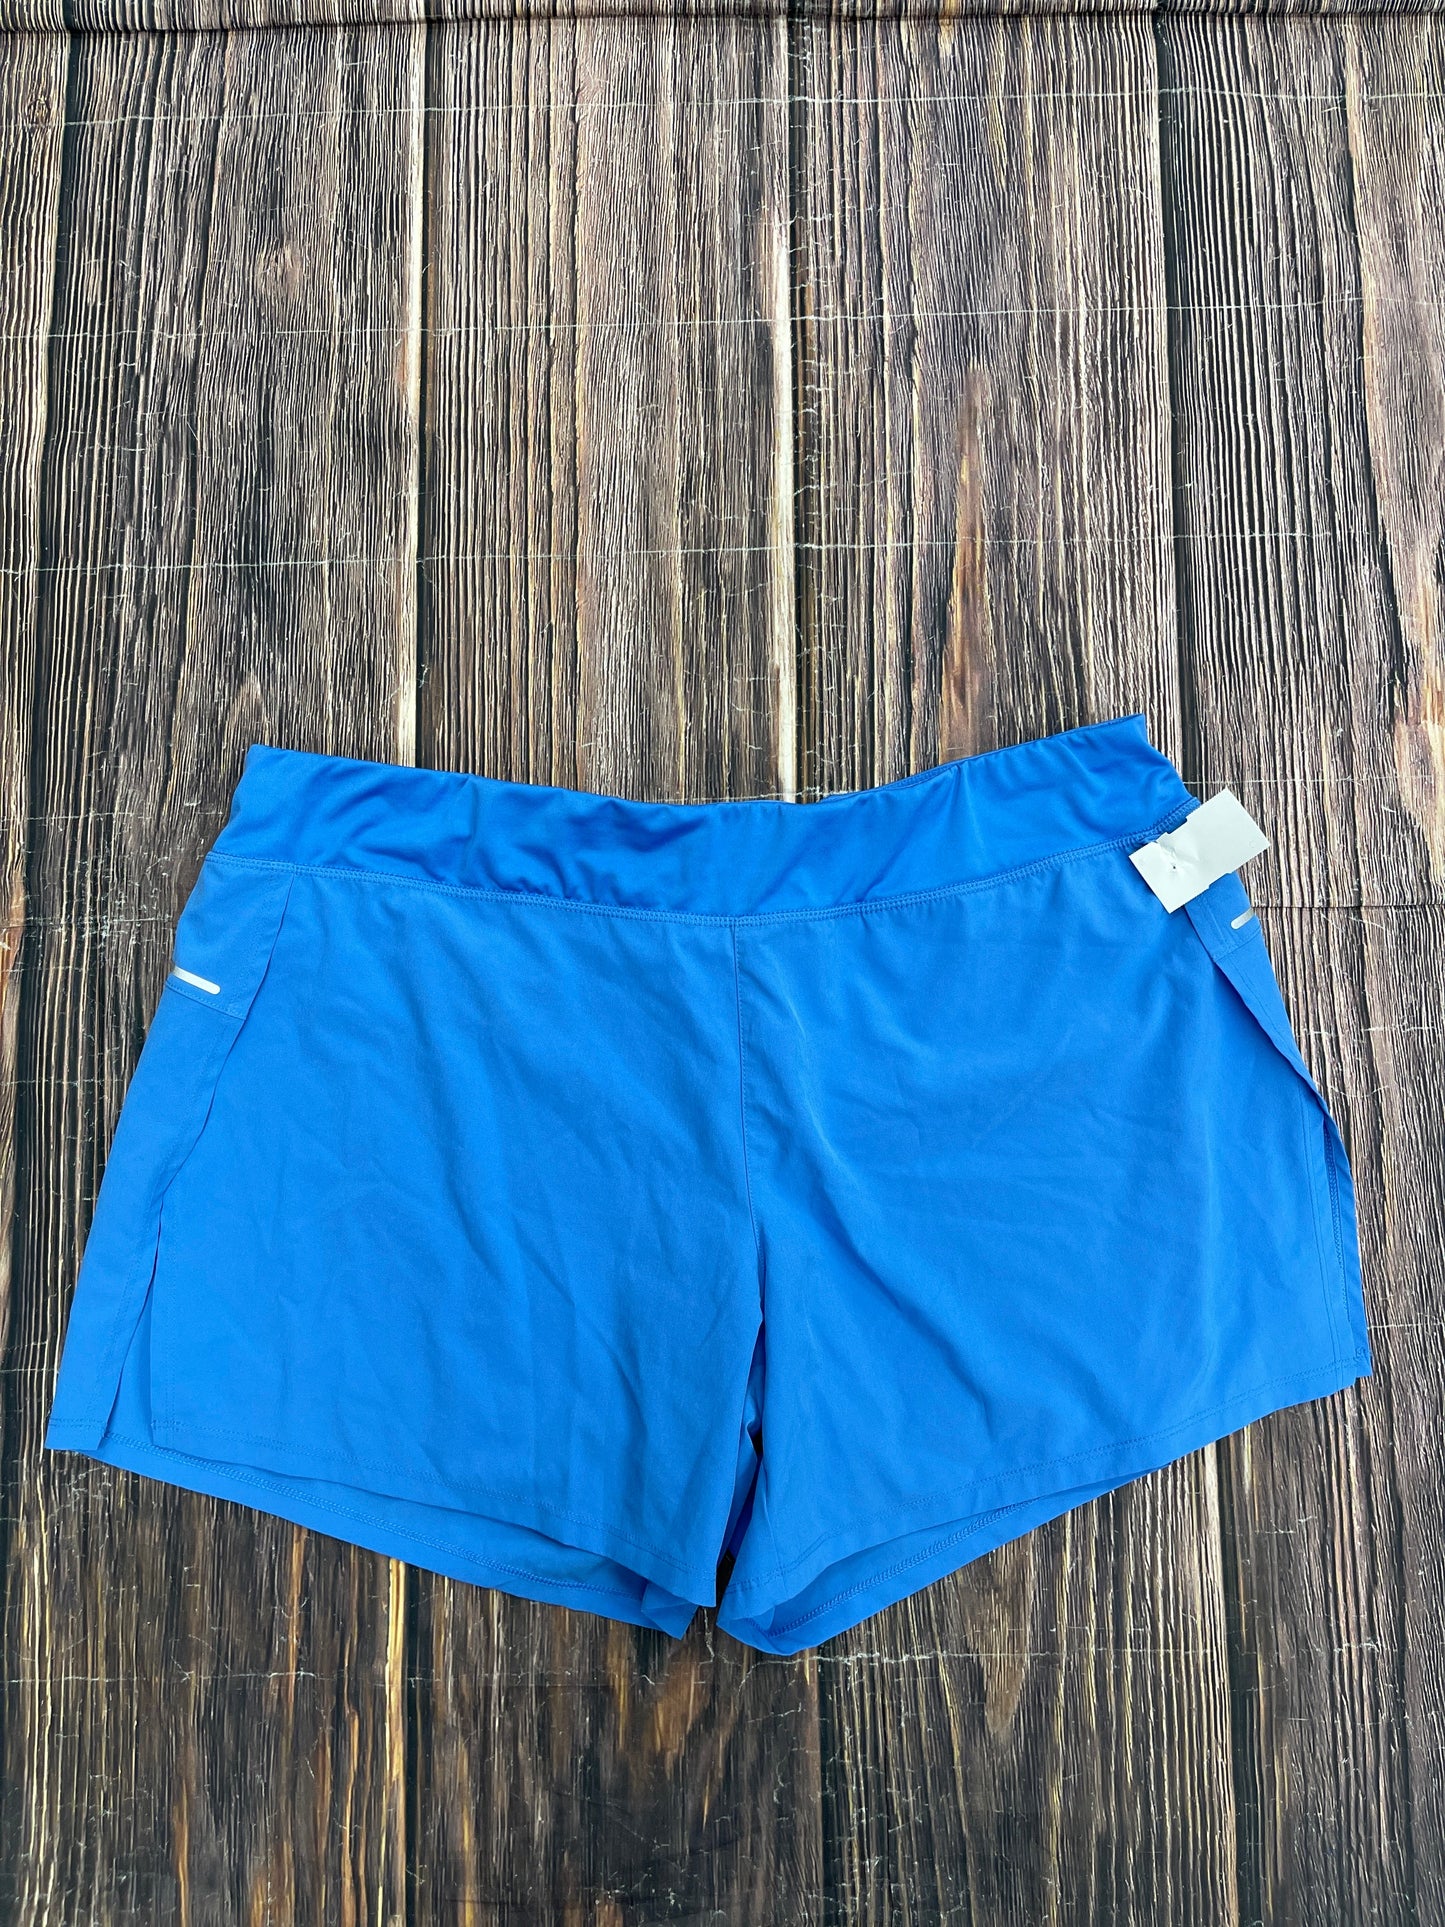 Blue Athletic Shorts Avia, Size 1x